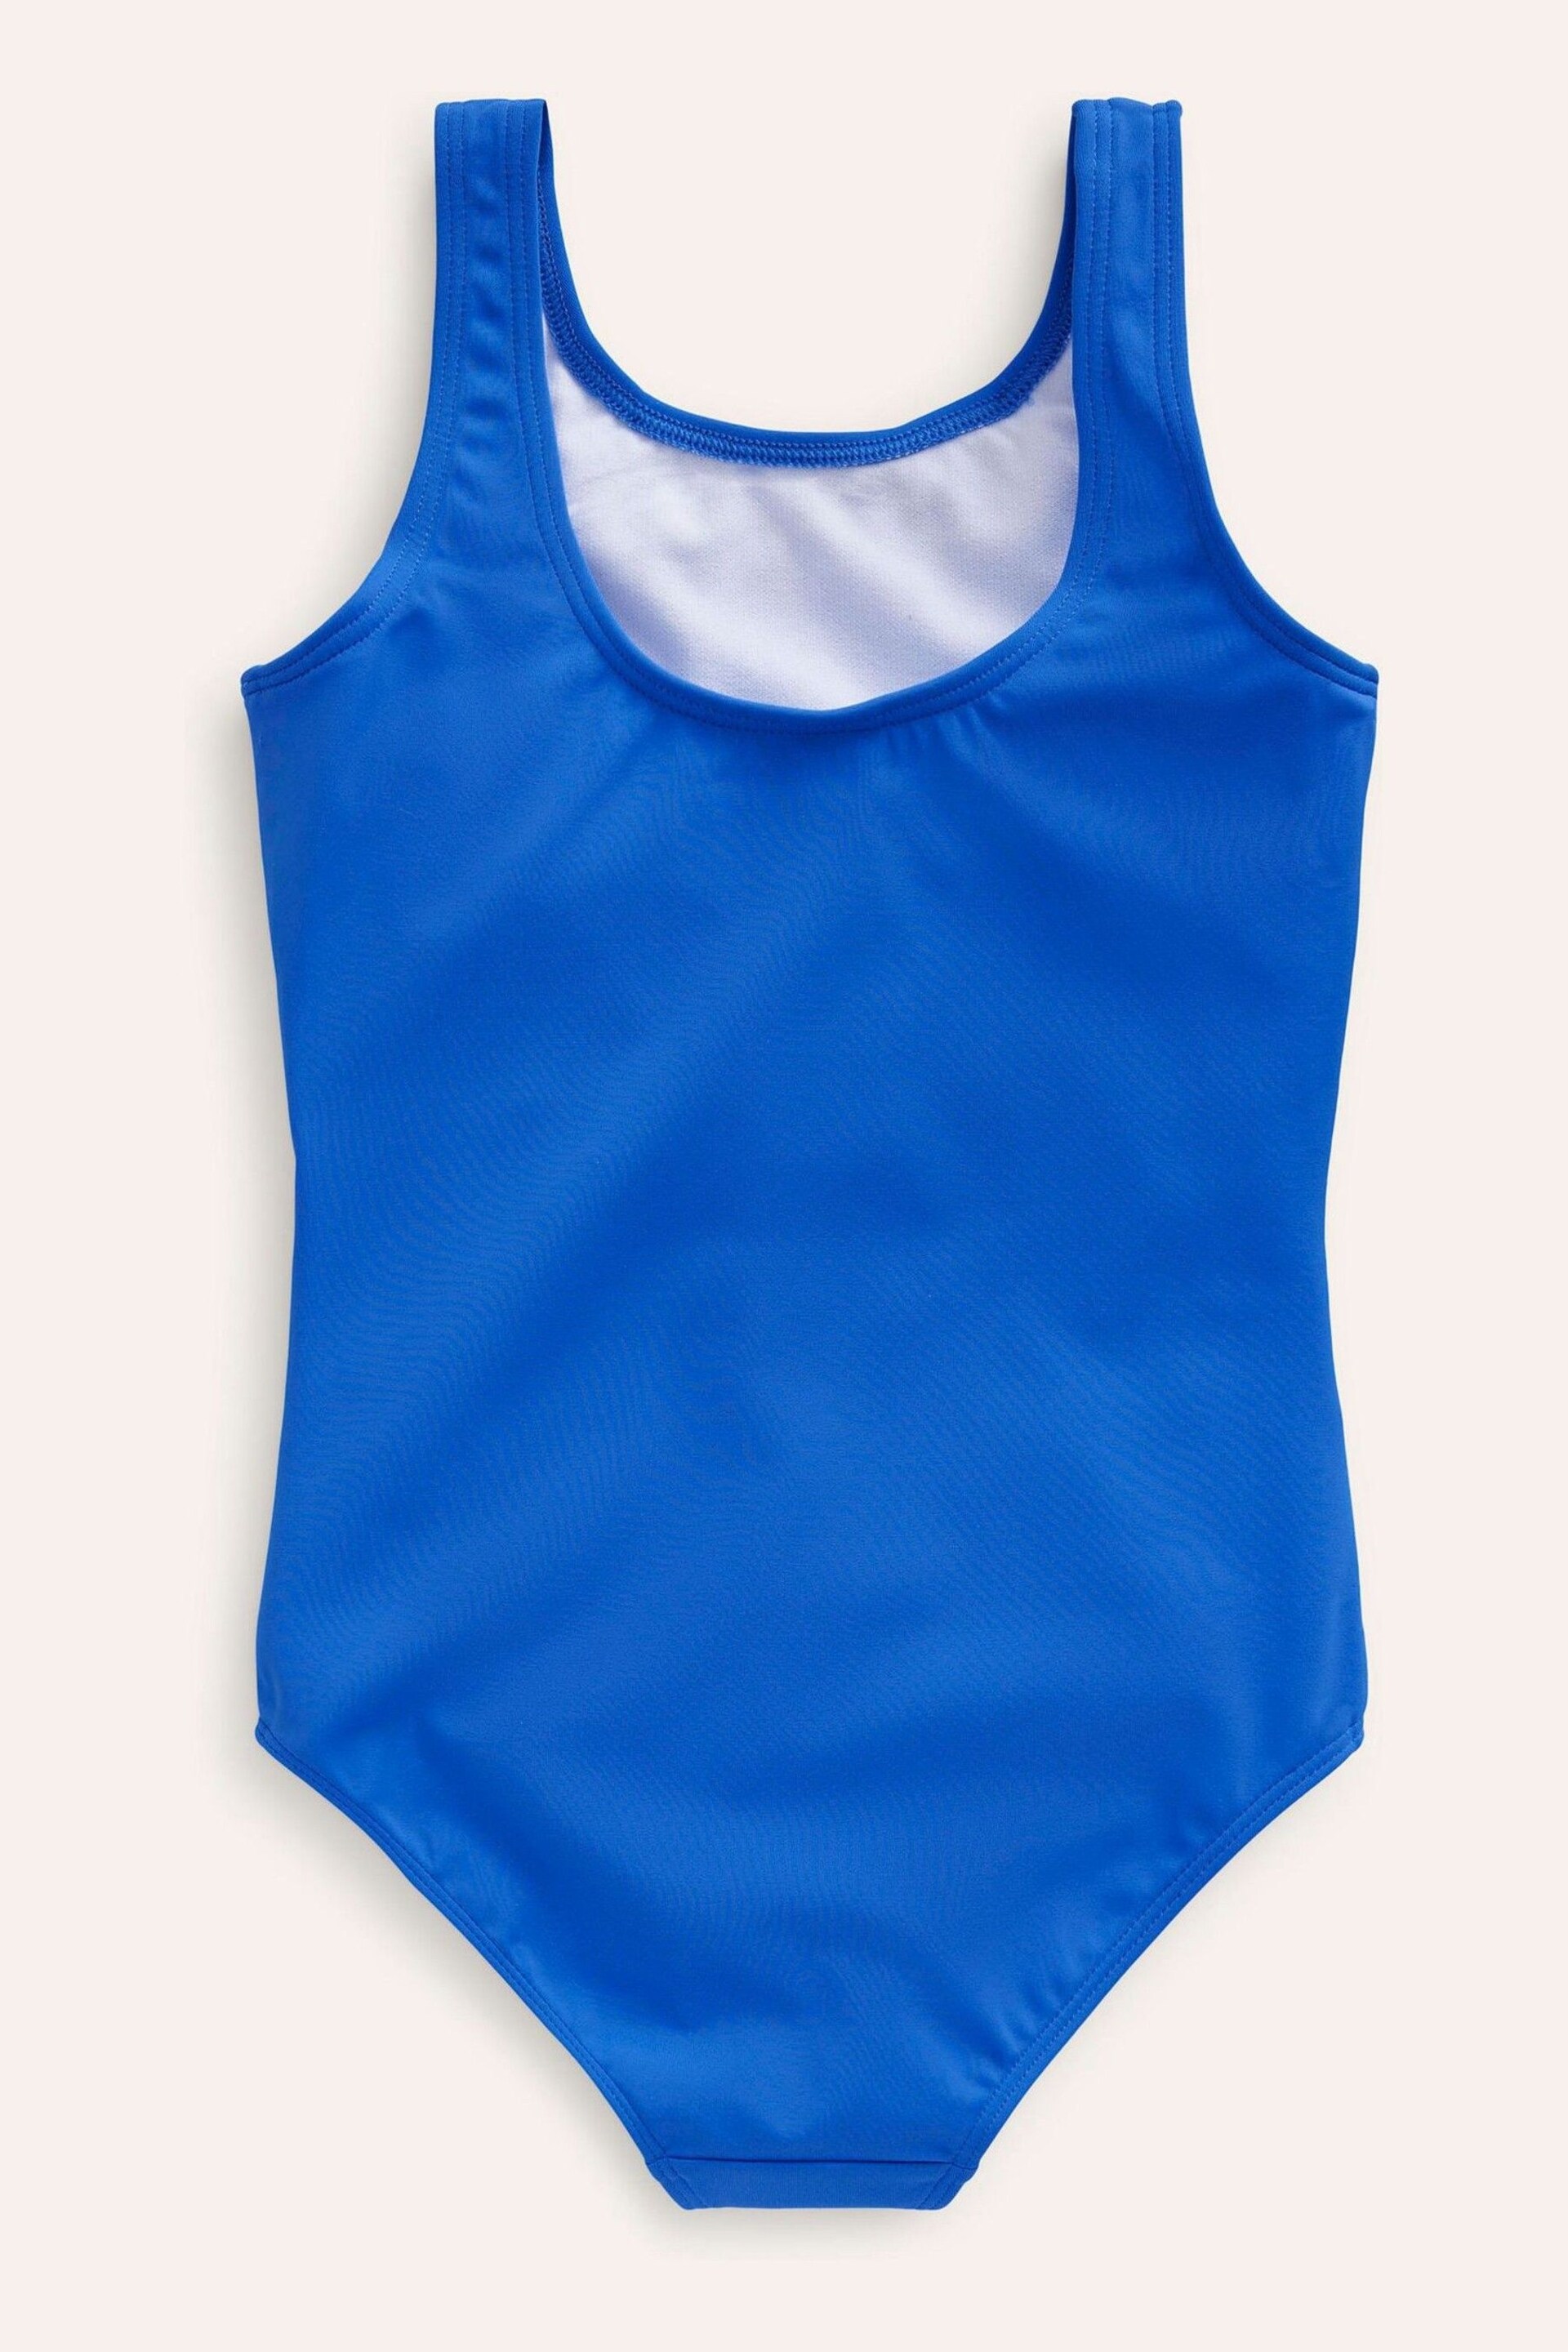 Boden Blue Fun Appliqué Swimsuit - Image 2 of 3